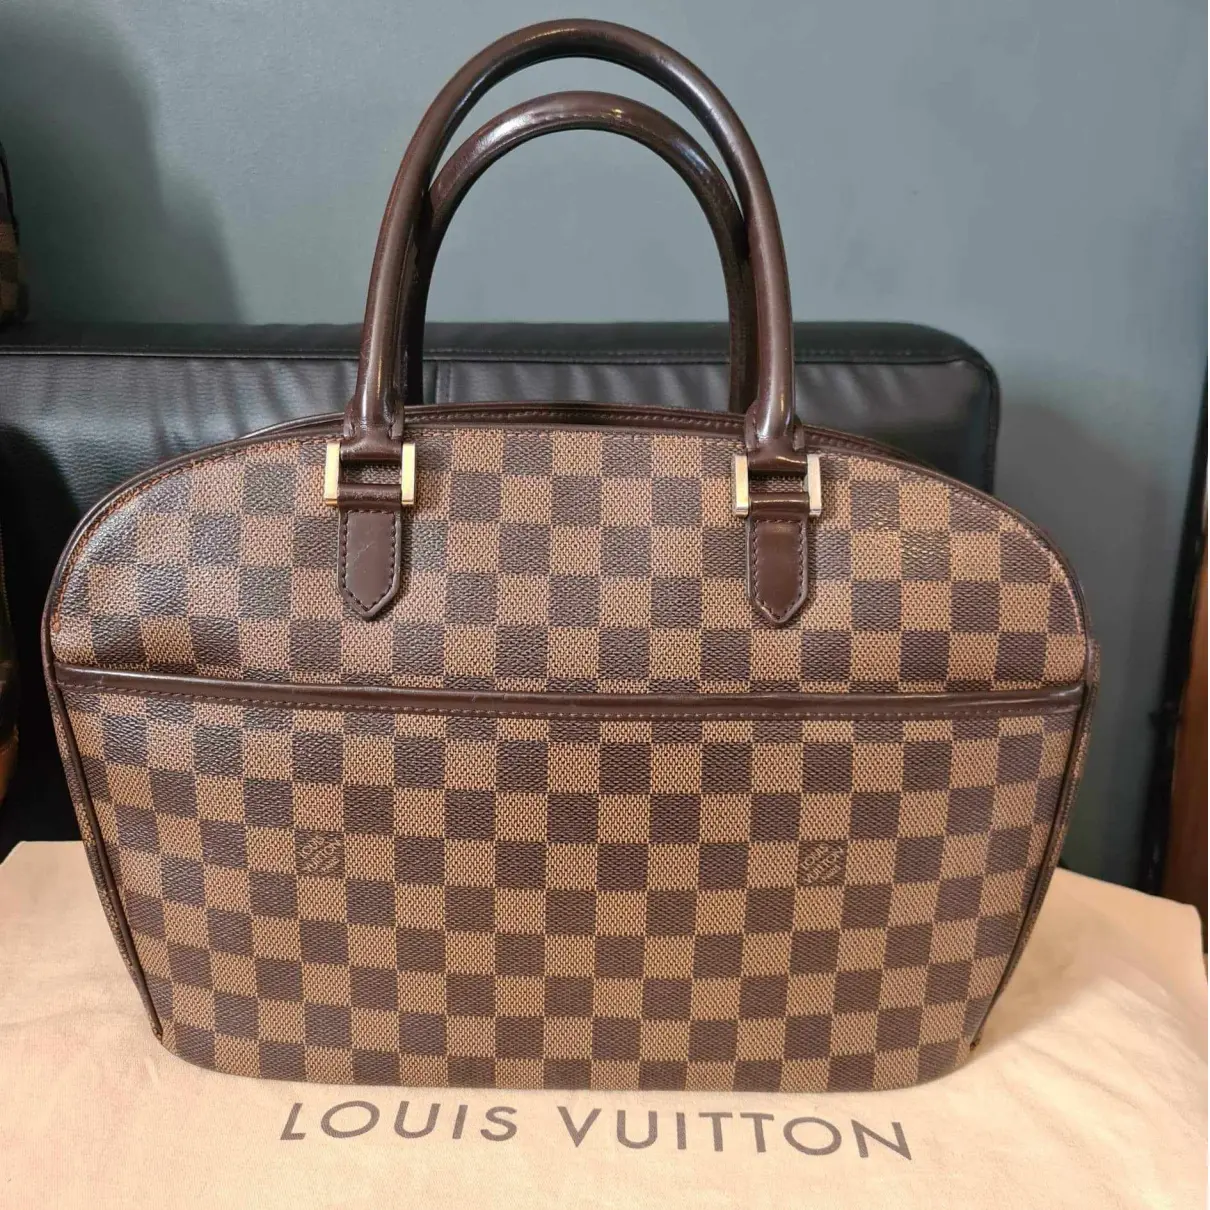 Sarria leather satchel Louis Vuitton